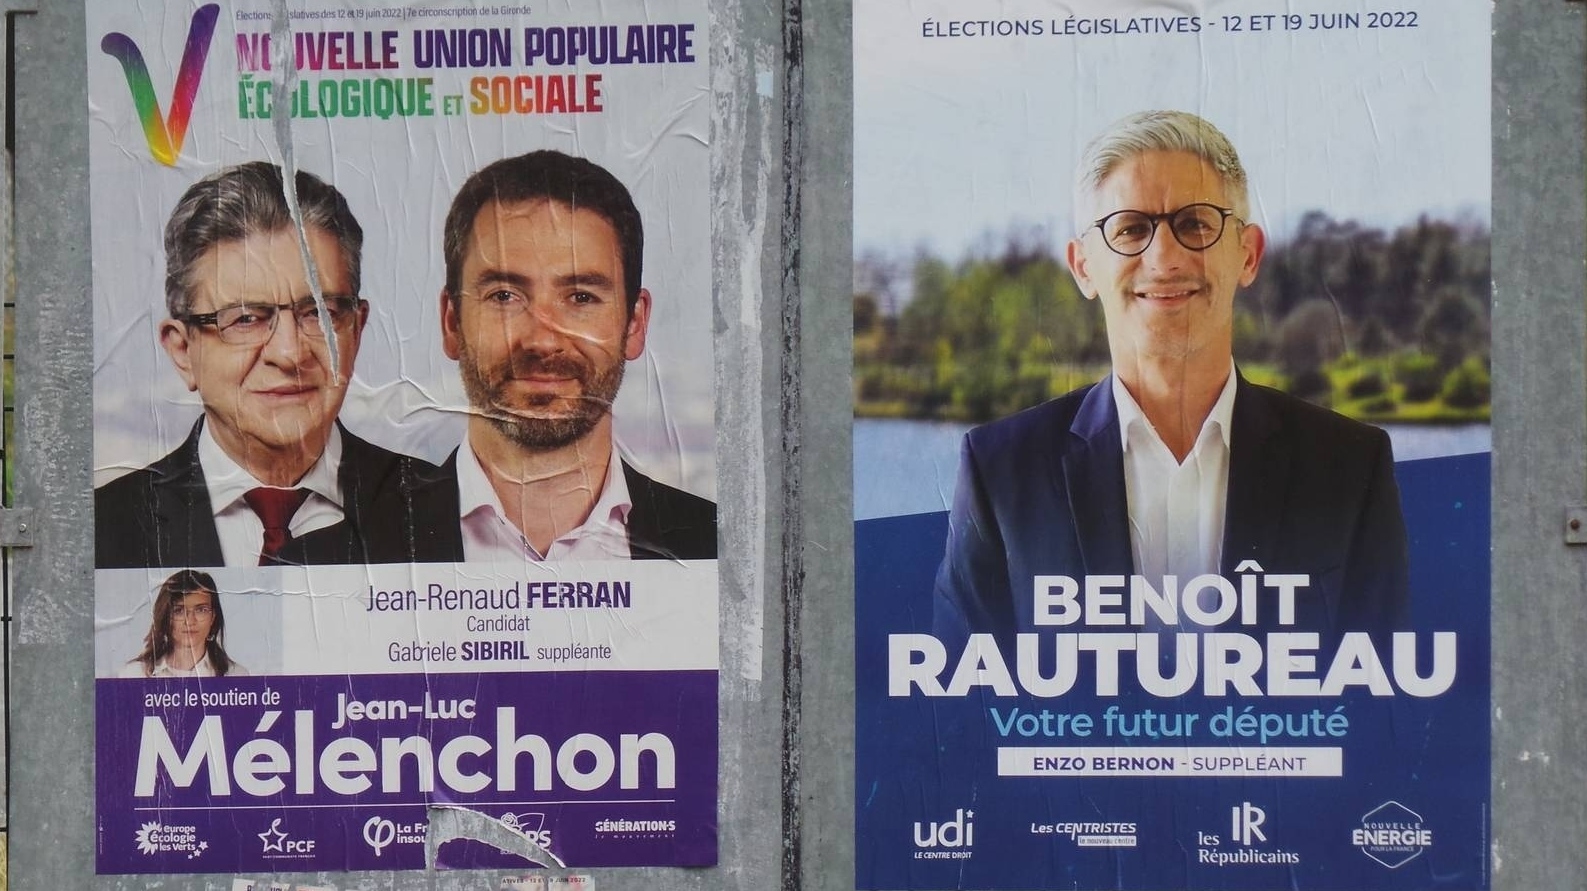 Предвыборные плакаты во Франции. Июнь 2022 года.